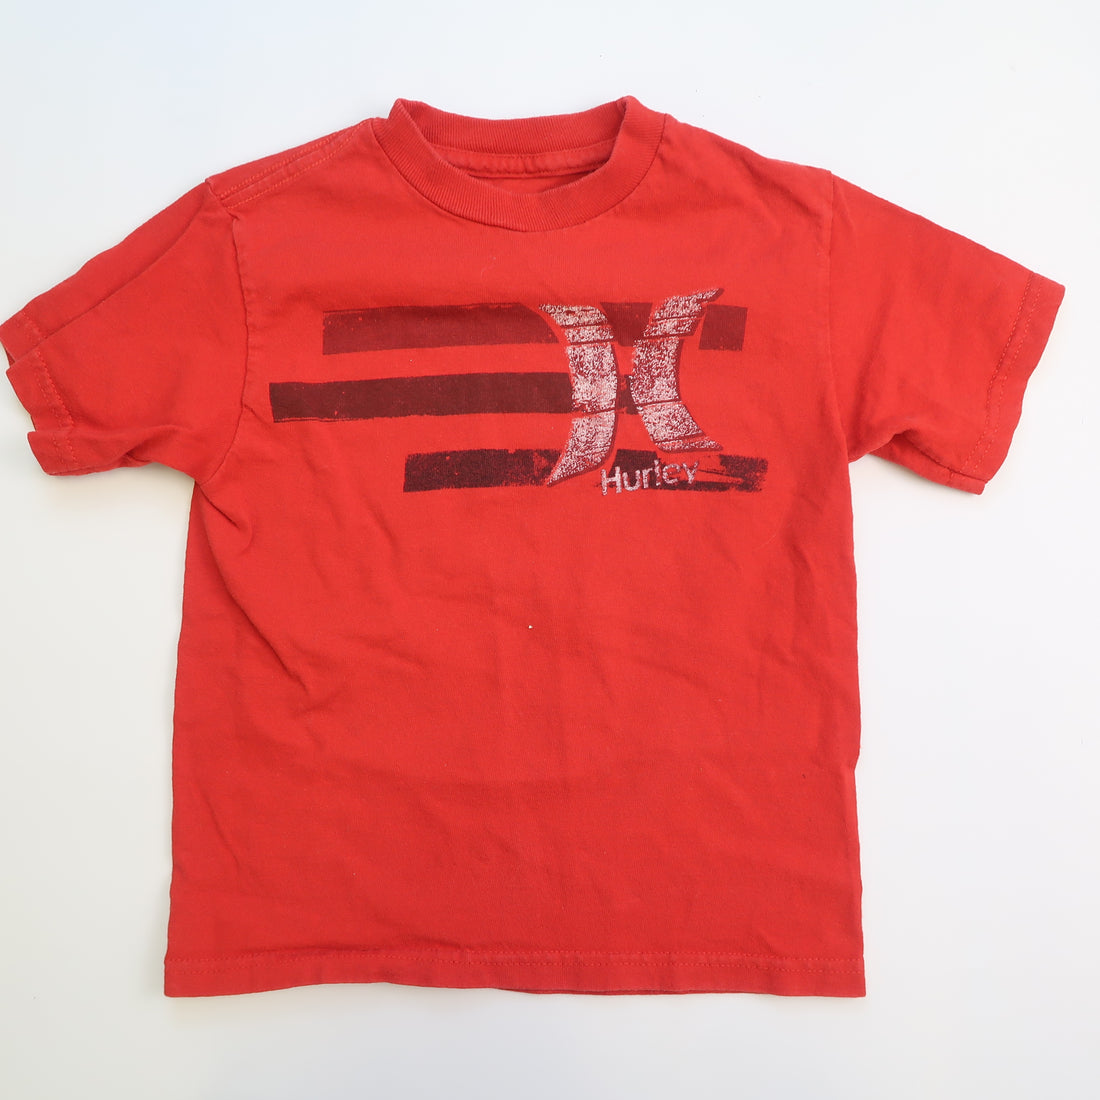 Hurley - T-Shirt (4Y)